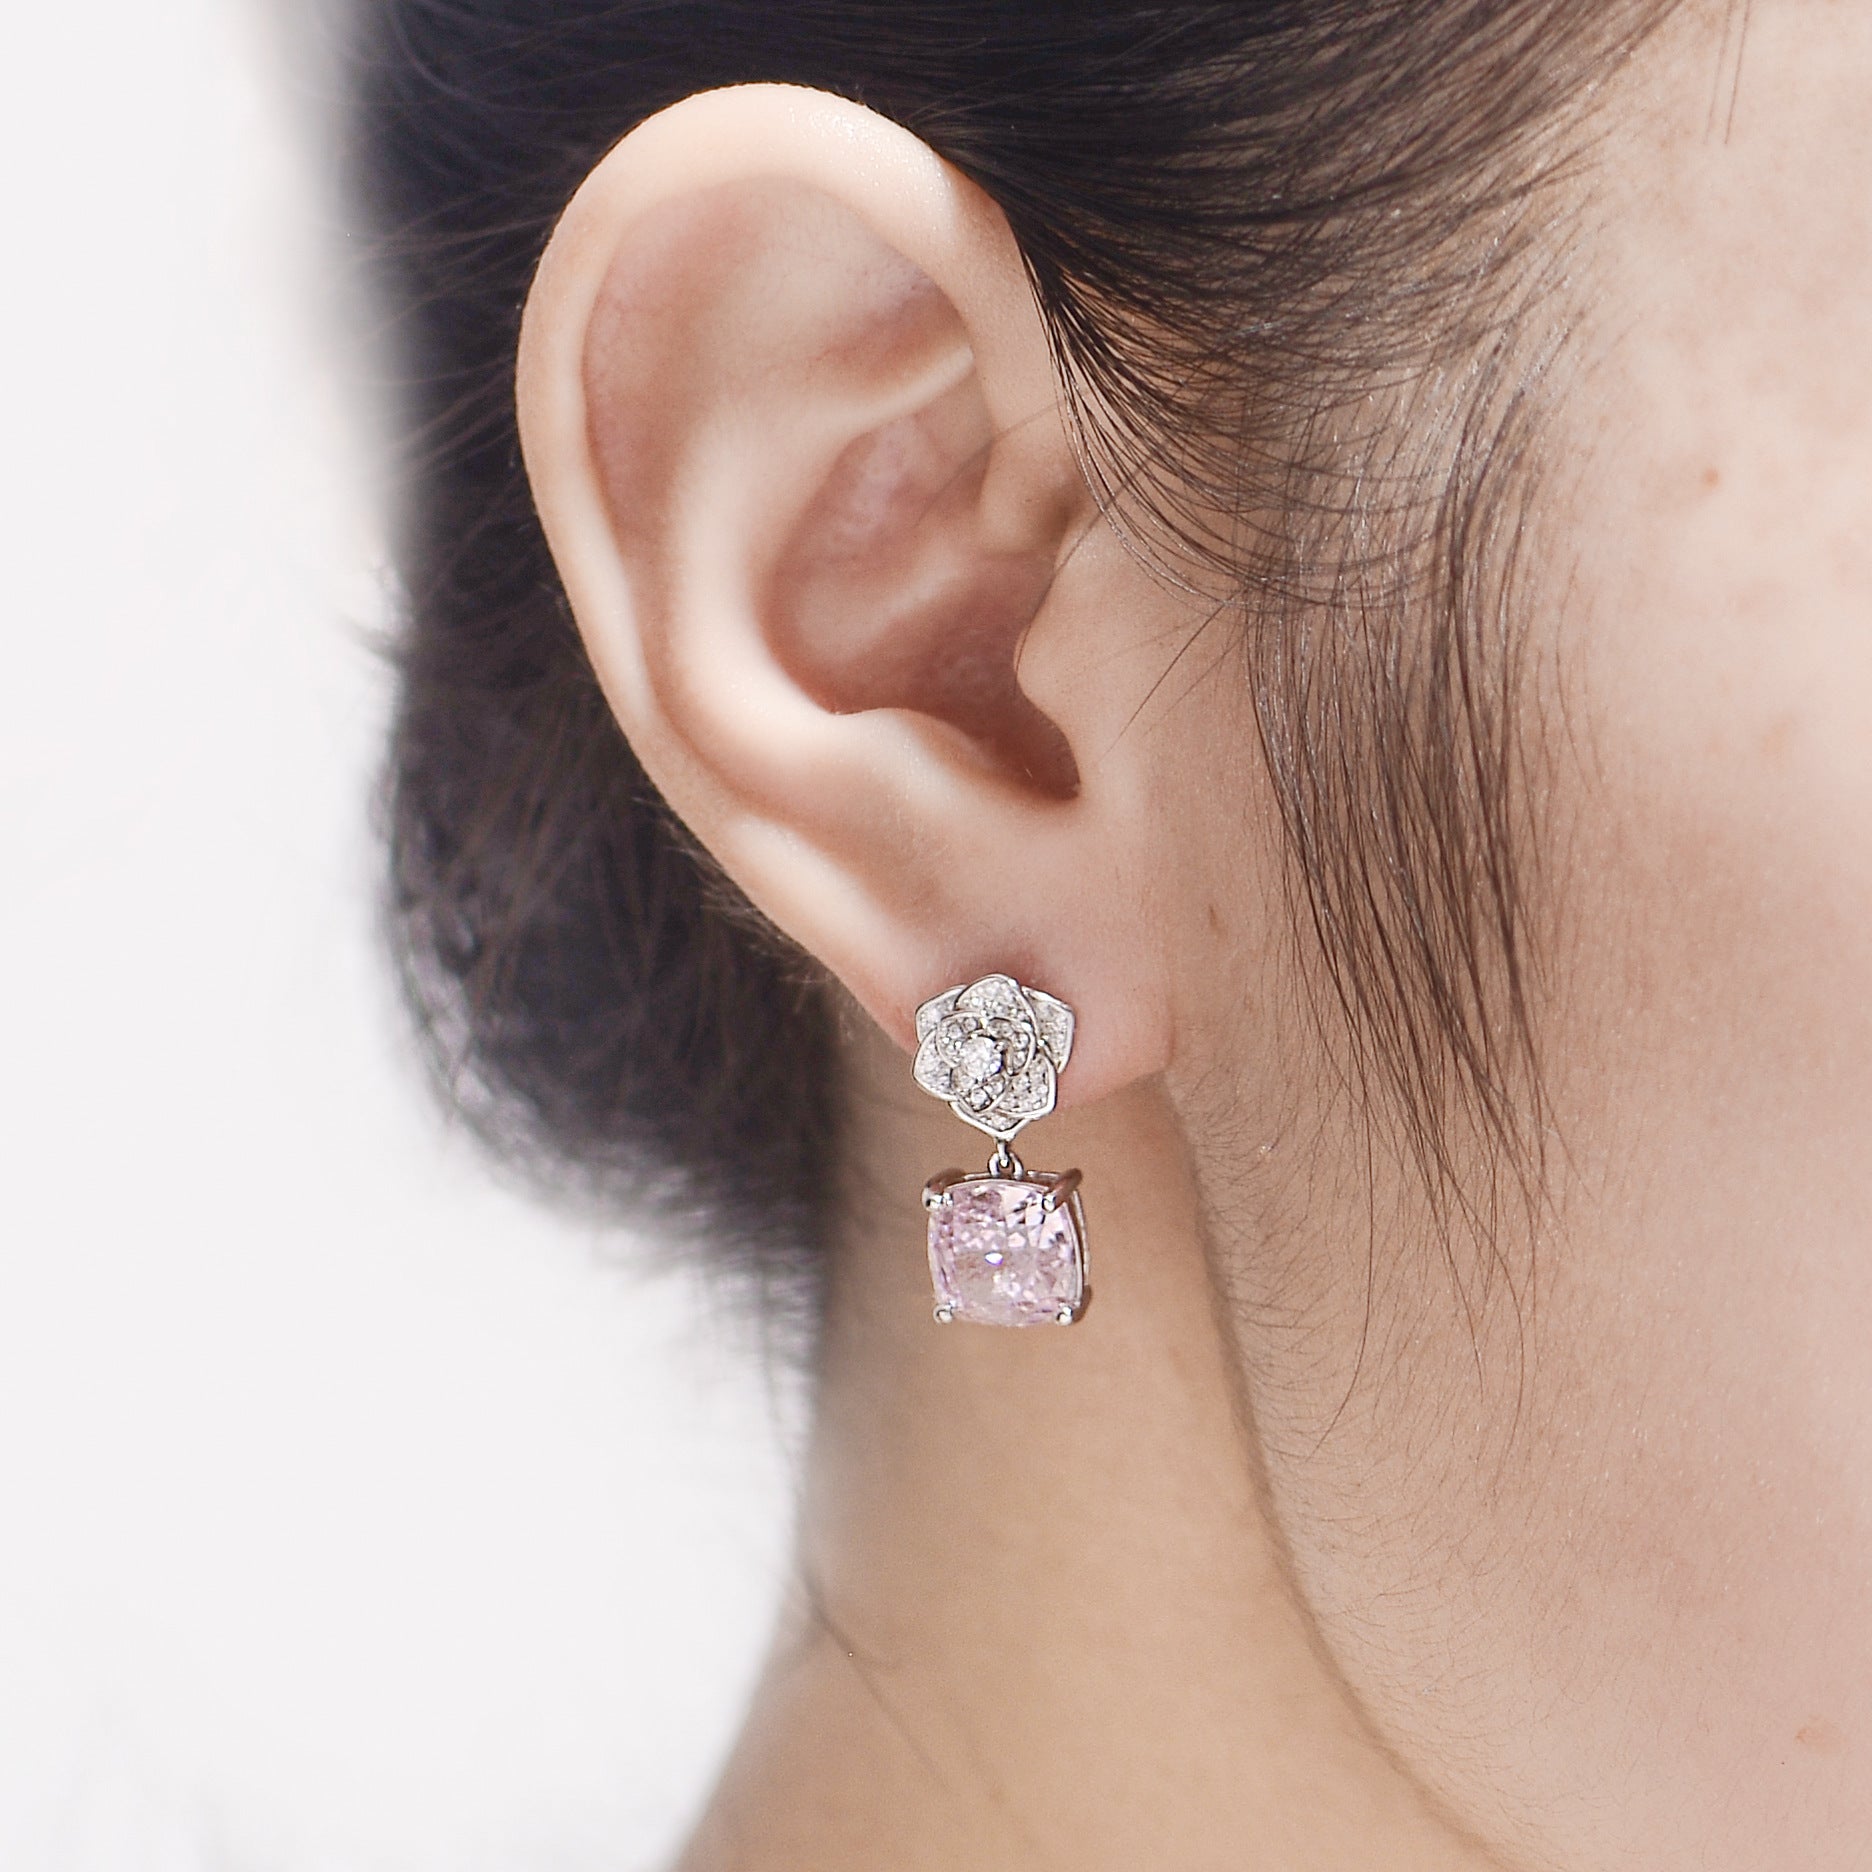 Pink Zircon 8*8mm Cushion Ice Cut Camellia Silver Drop Earrings for Women